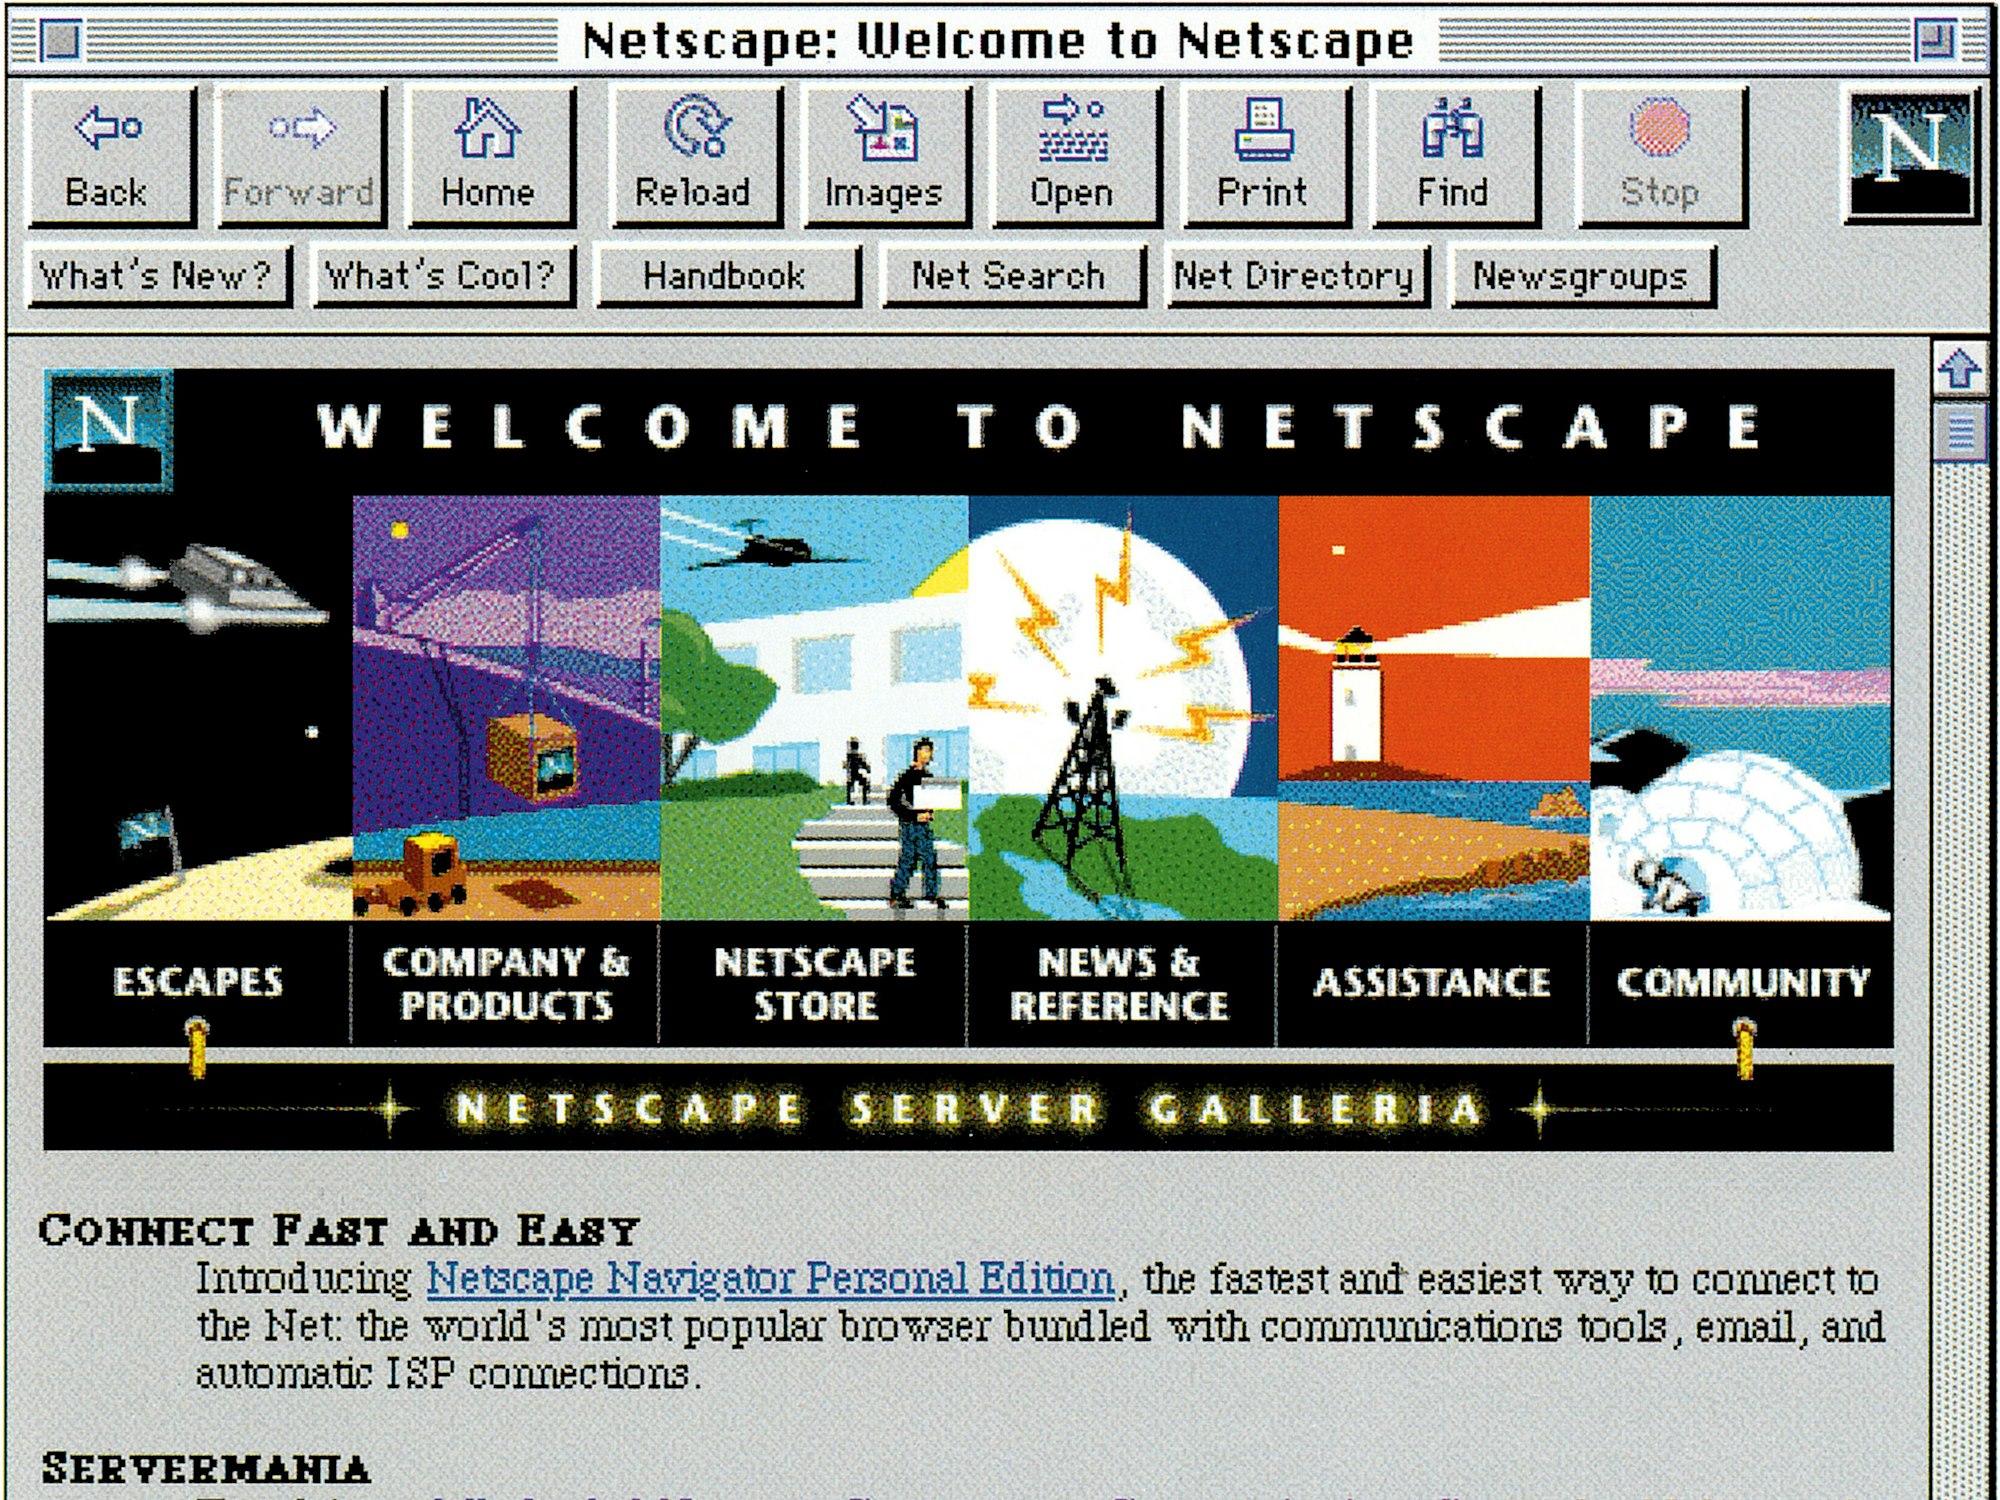 Im Jahr 1994 wurde Netscape Communications gegründet. Bild zur Verfügung gestellt vom Taschen Verlag zum Buch "The Computer"

